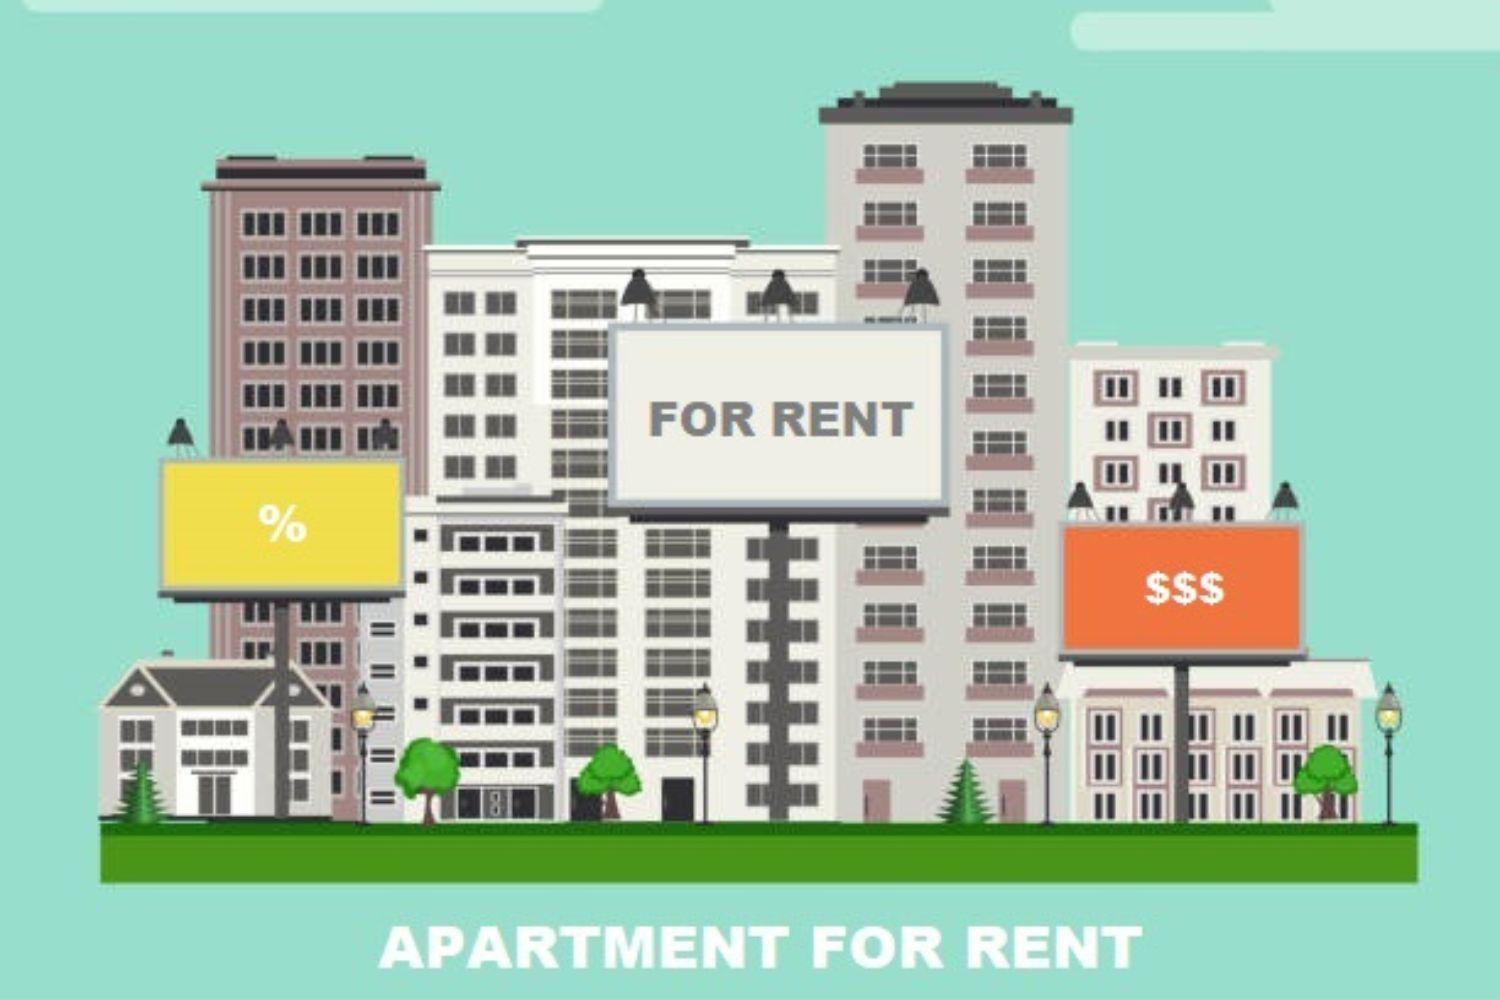 Curs investitii imobiliare – Apartamente pentru inchiriat